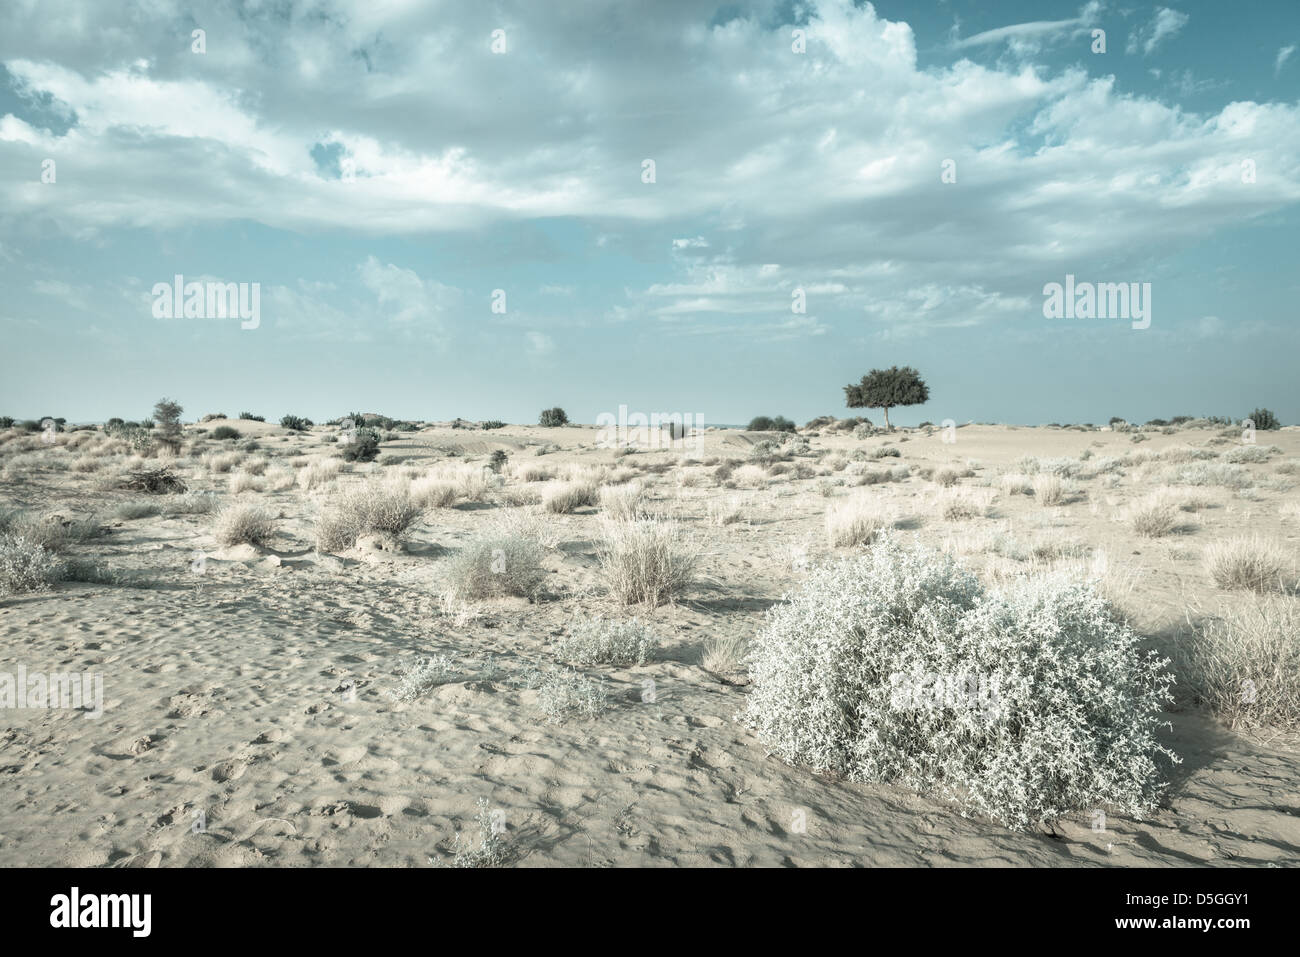 Uno rhejri (Prosopis cineraria) árbol en el desierto de Thar ( gran desierto indio) bajo el nublado cielo azul en colores azul claro Foto de stock